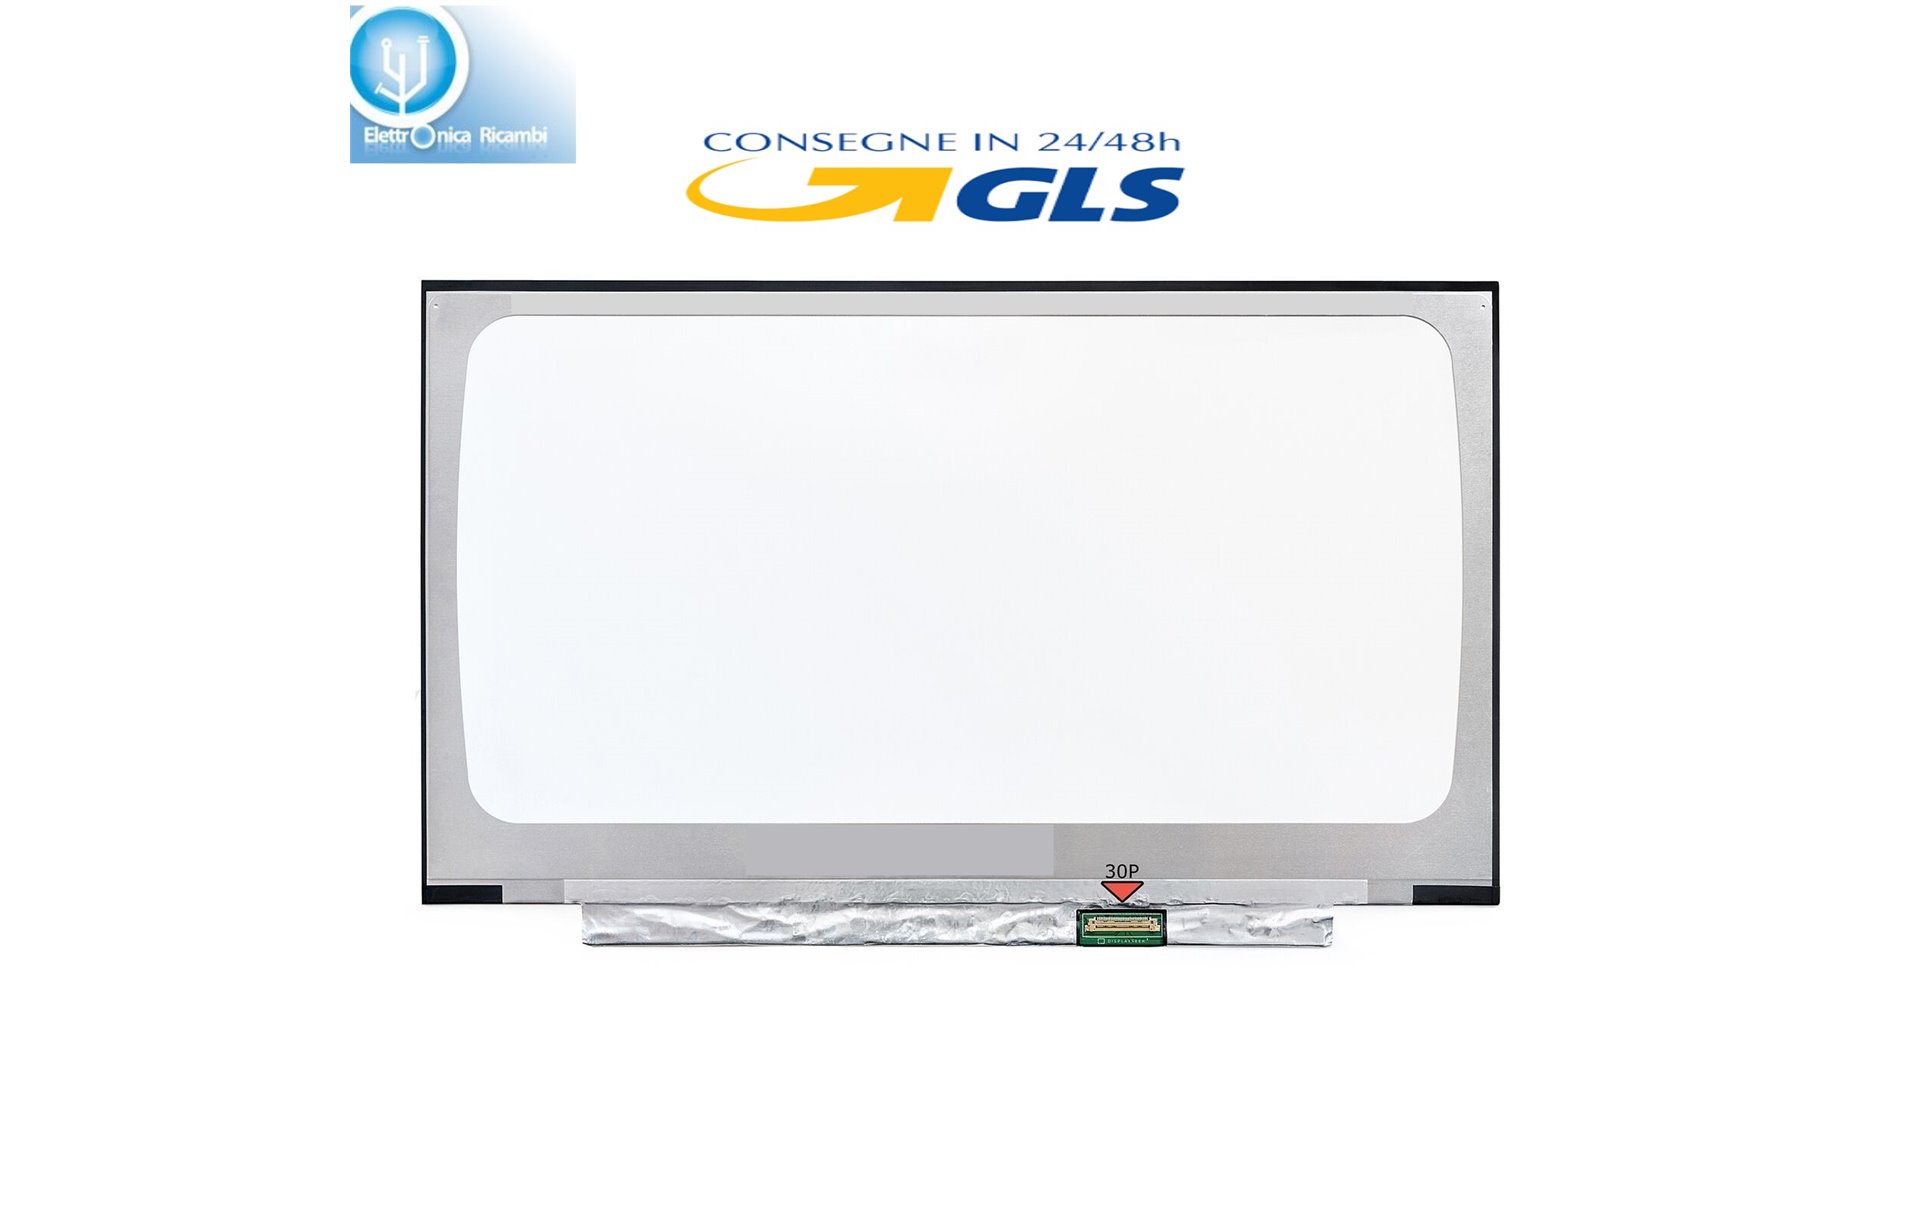 Display lcd schermo ASUS R465J SERIES 14" led Slim 30 pin wxga  (1920X1080) IPS